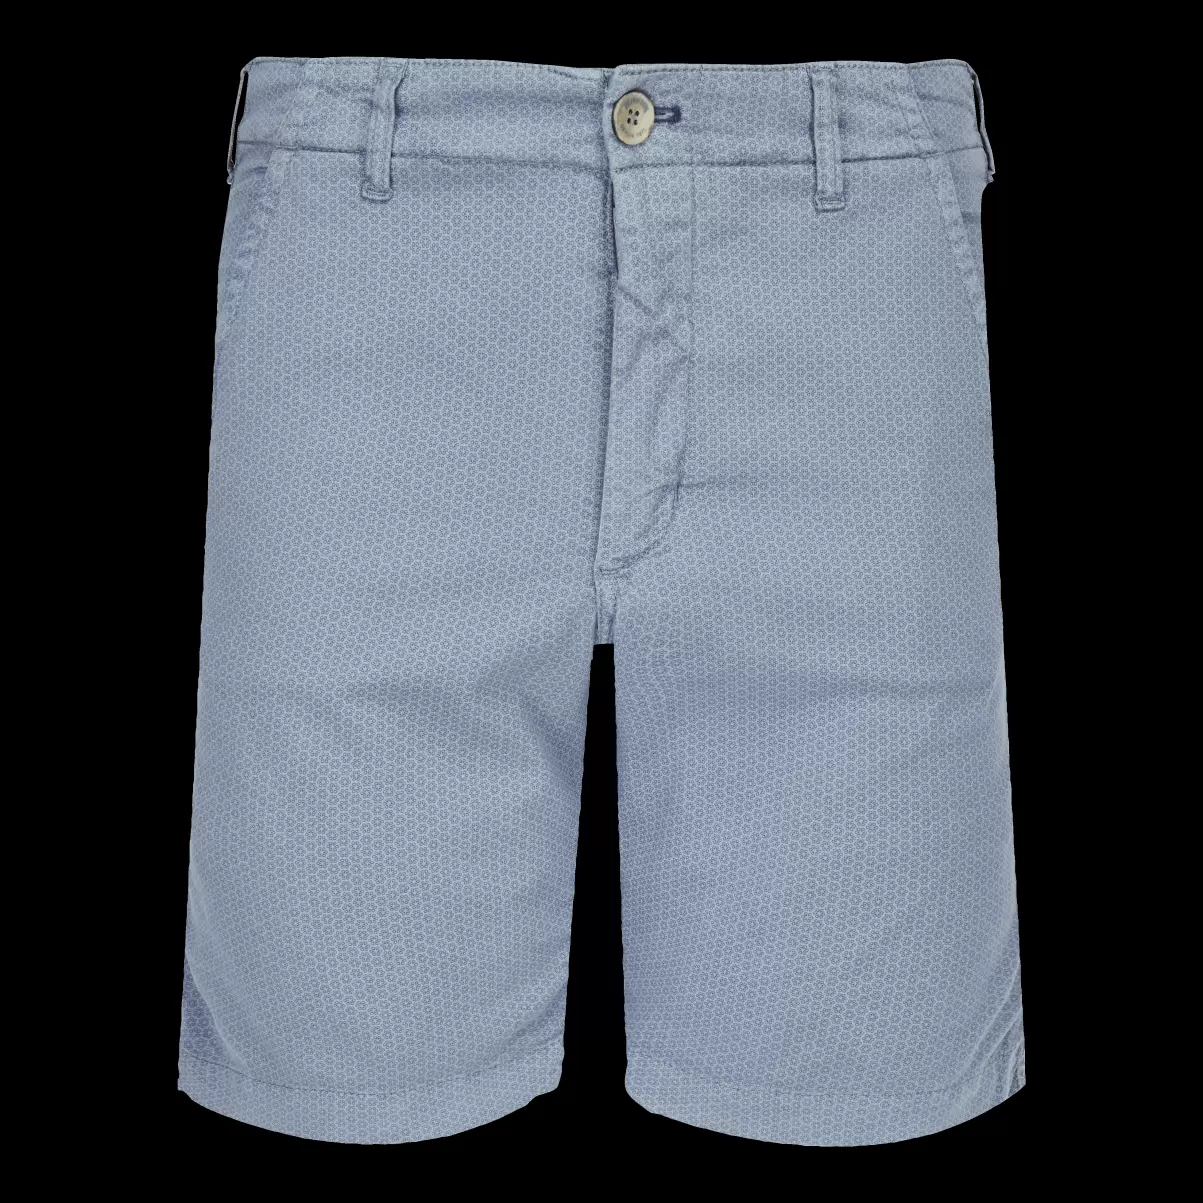 Hombre Vilebrequin Gris Metalico / Gris Shorts Autorización Bermudas Tipo Pantalones Chinos Para Hombre Con El Estampado Micro Flowers - 3